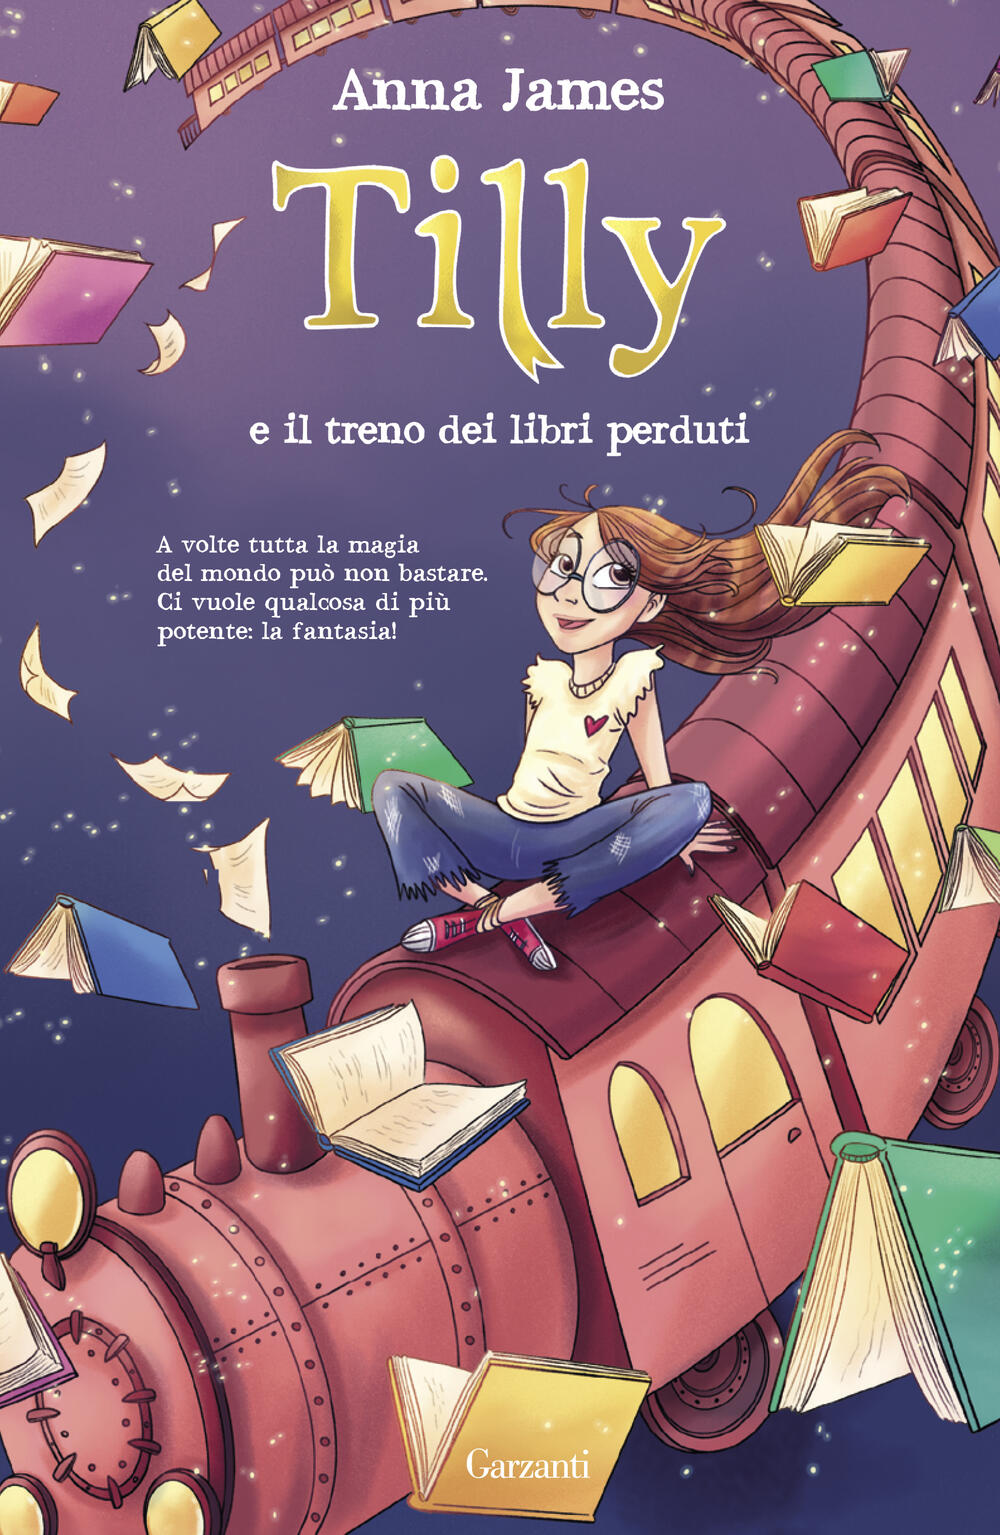 Il magico mondo delle storie: “Tilly e i segreti dei libri” di Anna James -  Libreria Essai